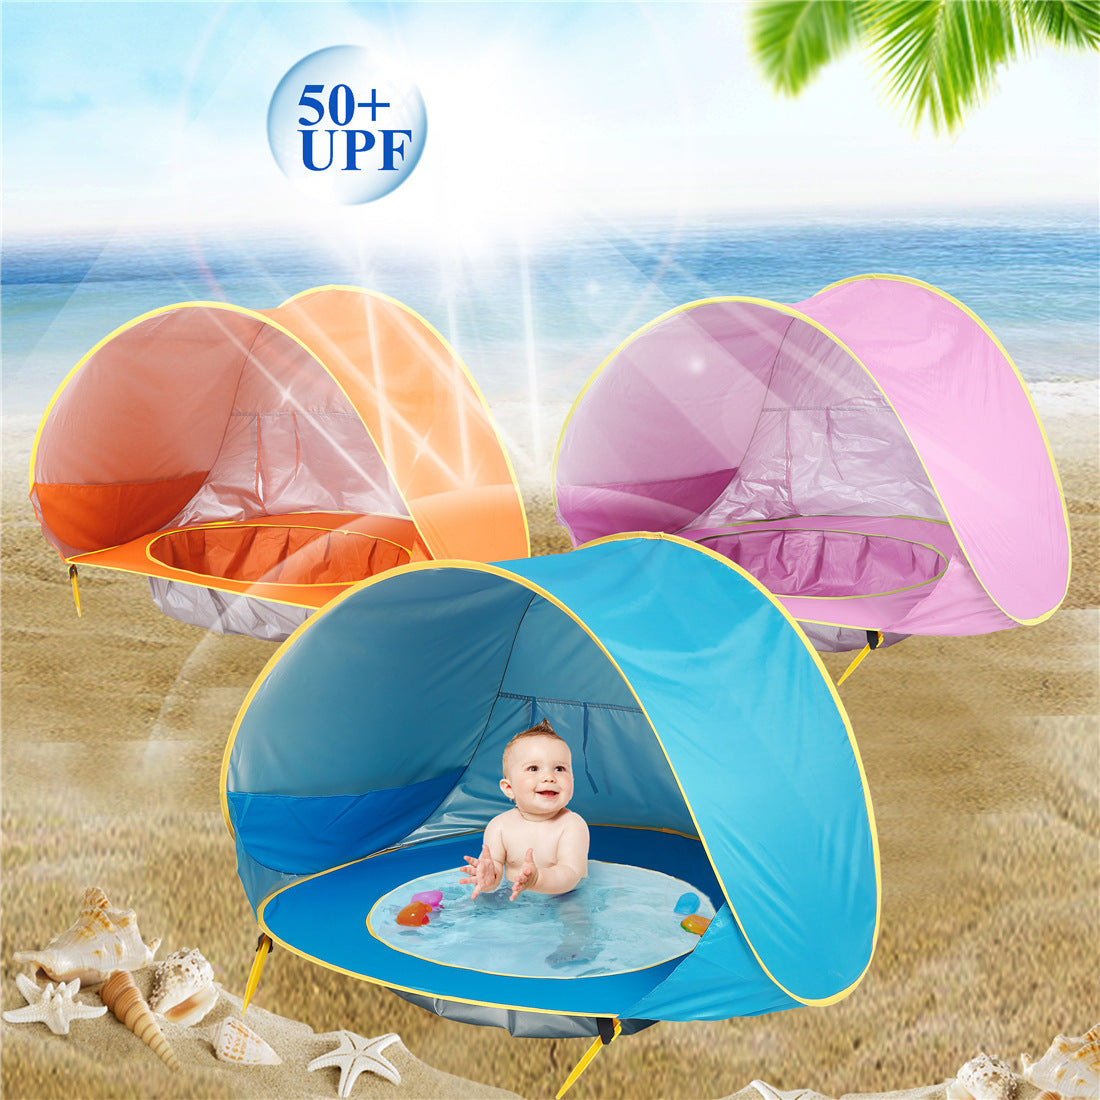 Verschiedene farbige BeachPool Zelte, darunter in Orange, Rosa und Blau, am sonnigen Strand aufgestellt, mit einem Fokus auf das blaue Zelt im Vordergrund, in dem ein fröhliches Baby in einem integrierten Mini-Pool spielt. Über den Zelten schwebt ein Symbol mit der Aufschrift '50+ UPF', welches den hohen UV-Schutz der Zeltmaterialien hervorhebt.